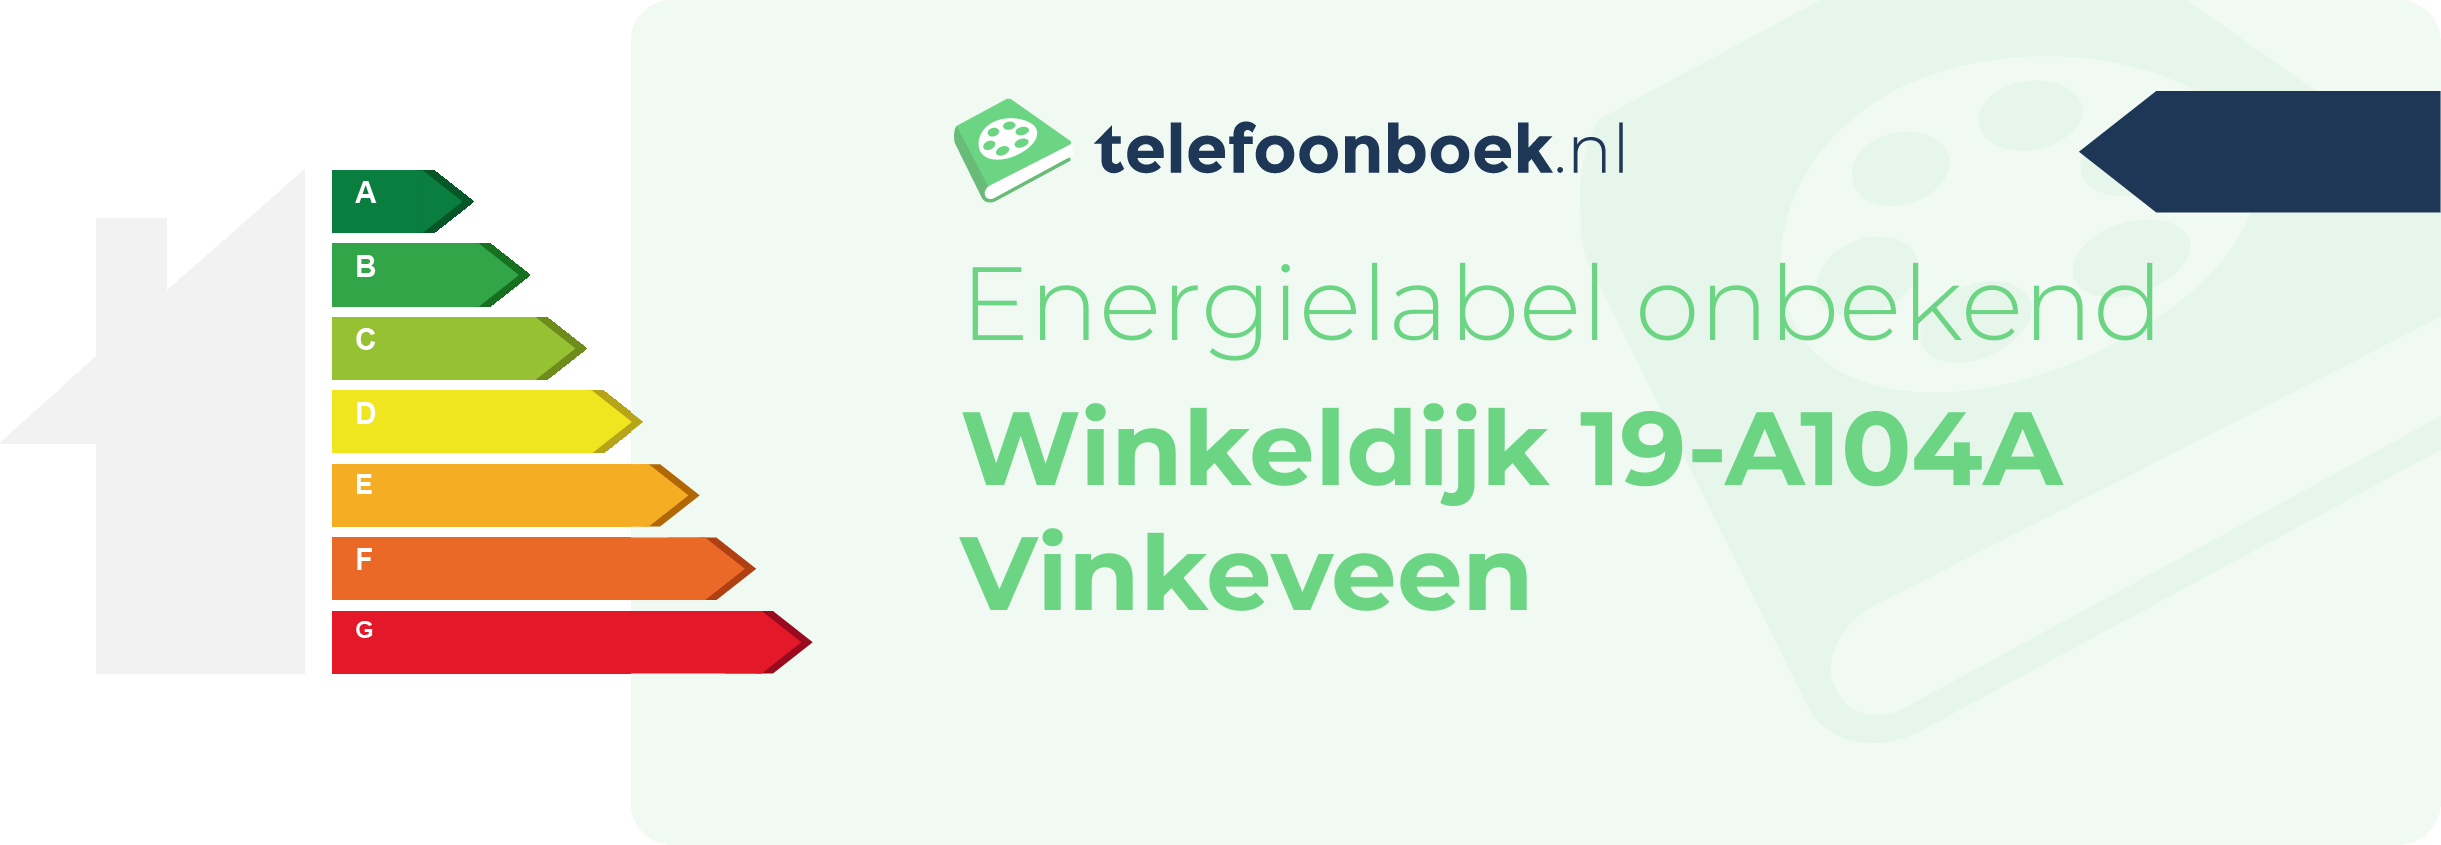 Energielabel Winkeldijk 19-A104A Vinkeveen